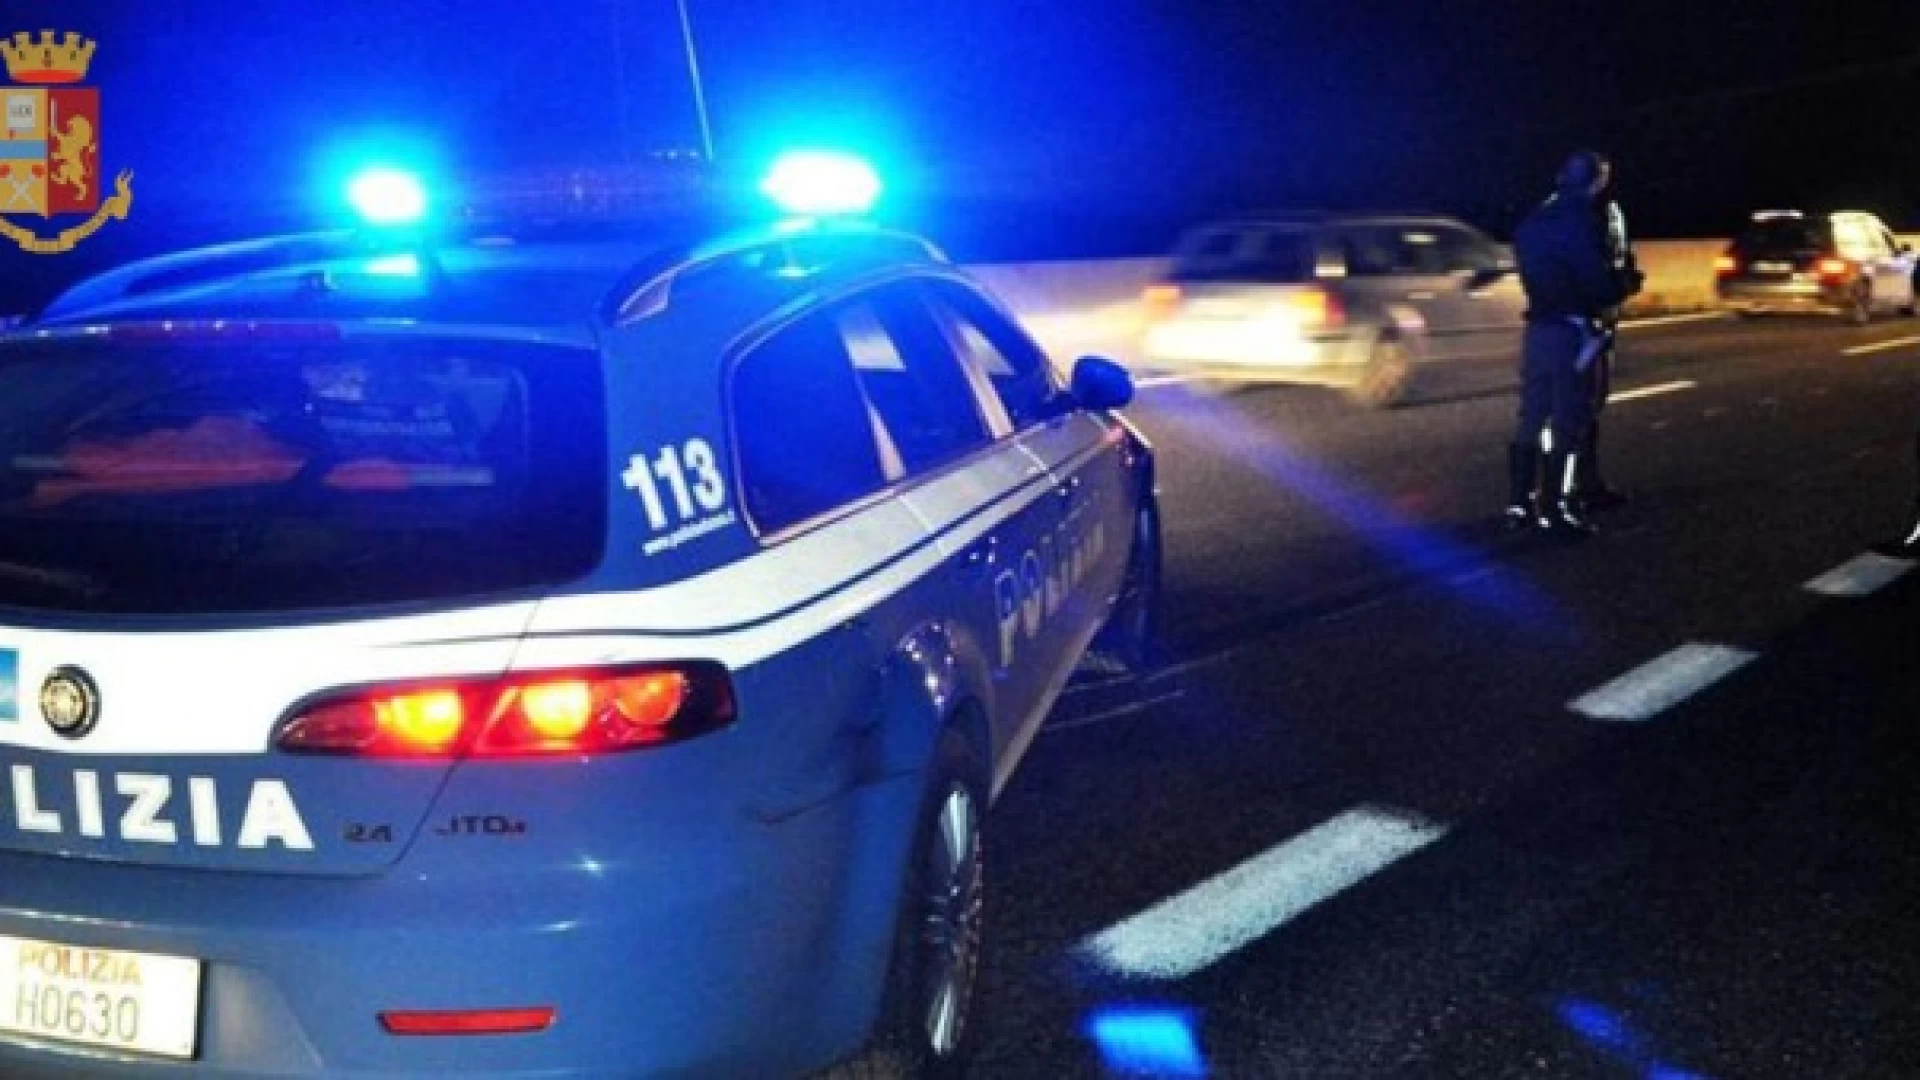 Polizia di Stato - Isernia:  incessanti controlli ai veicoli in transito sulle arterie delle provincia. Denunciate tre persone.